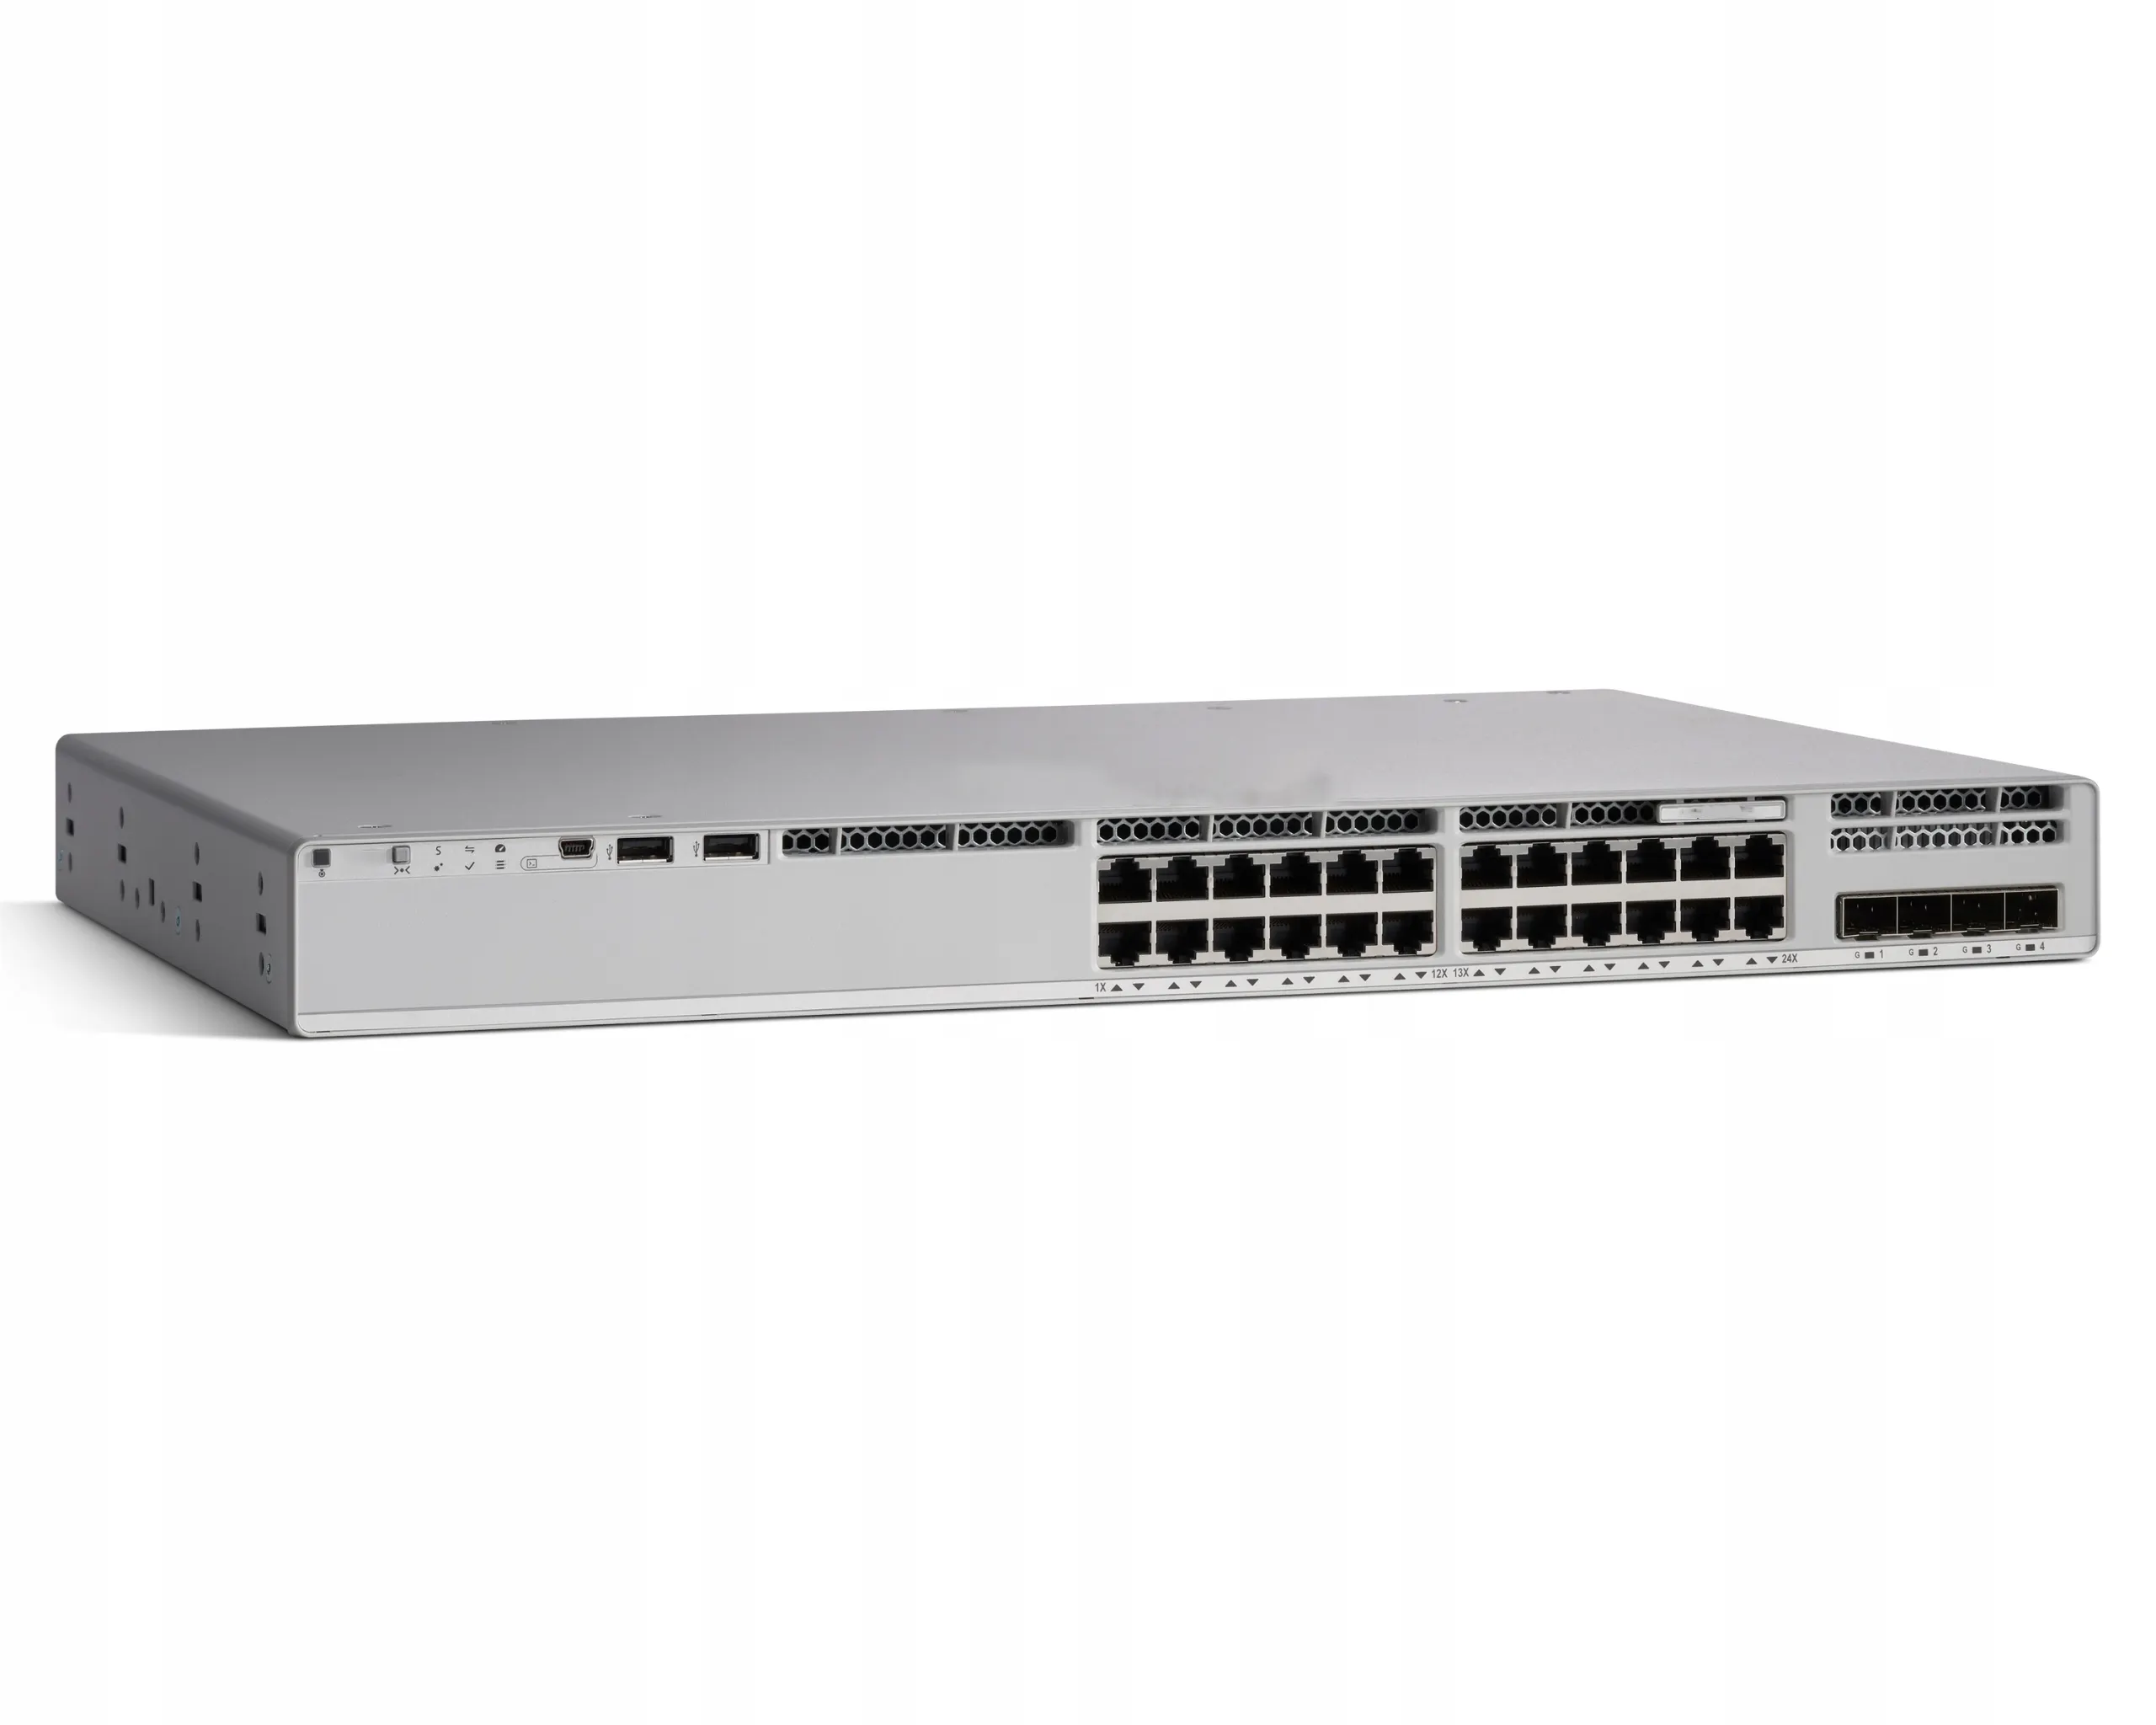 Tout nouveau commutateur C9300-48P-E avantage réseau Catalyst série 9300 C9300 48 ports PoE + prix des commutateurs Network Essentials